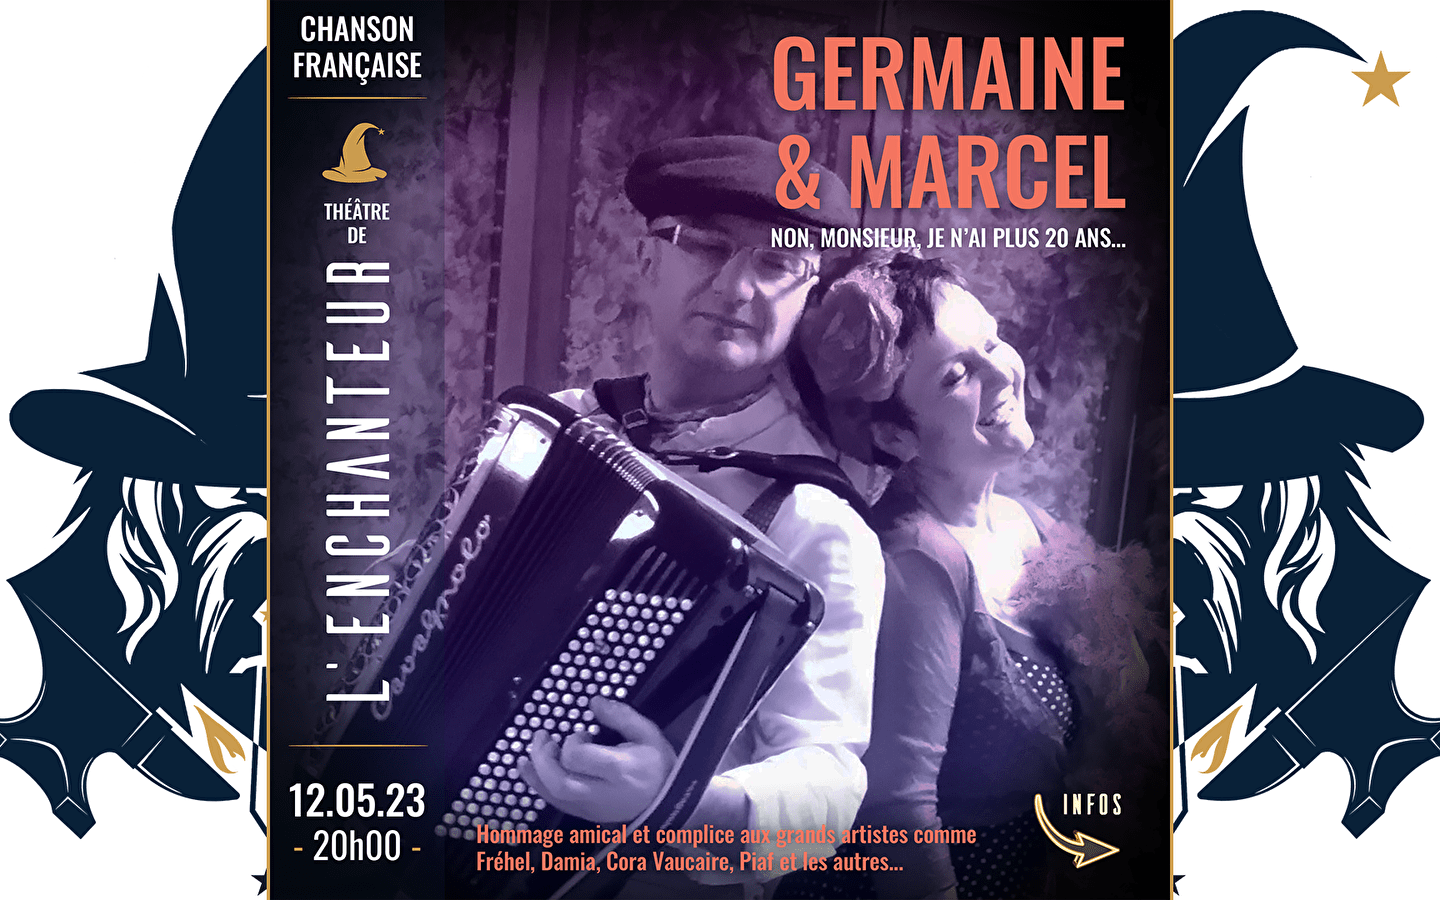 Germaine & Marcel